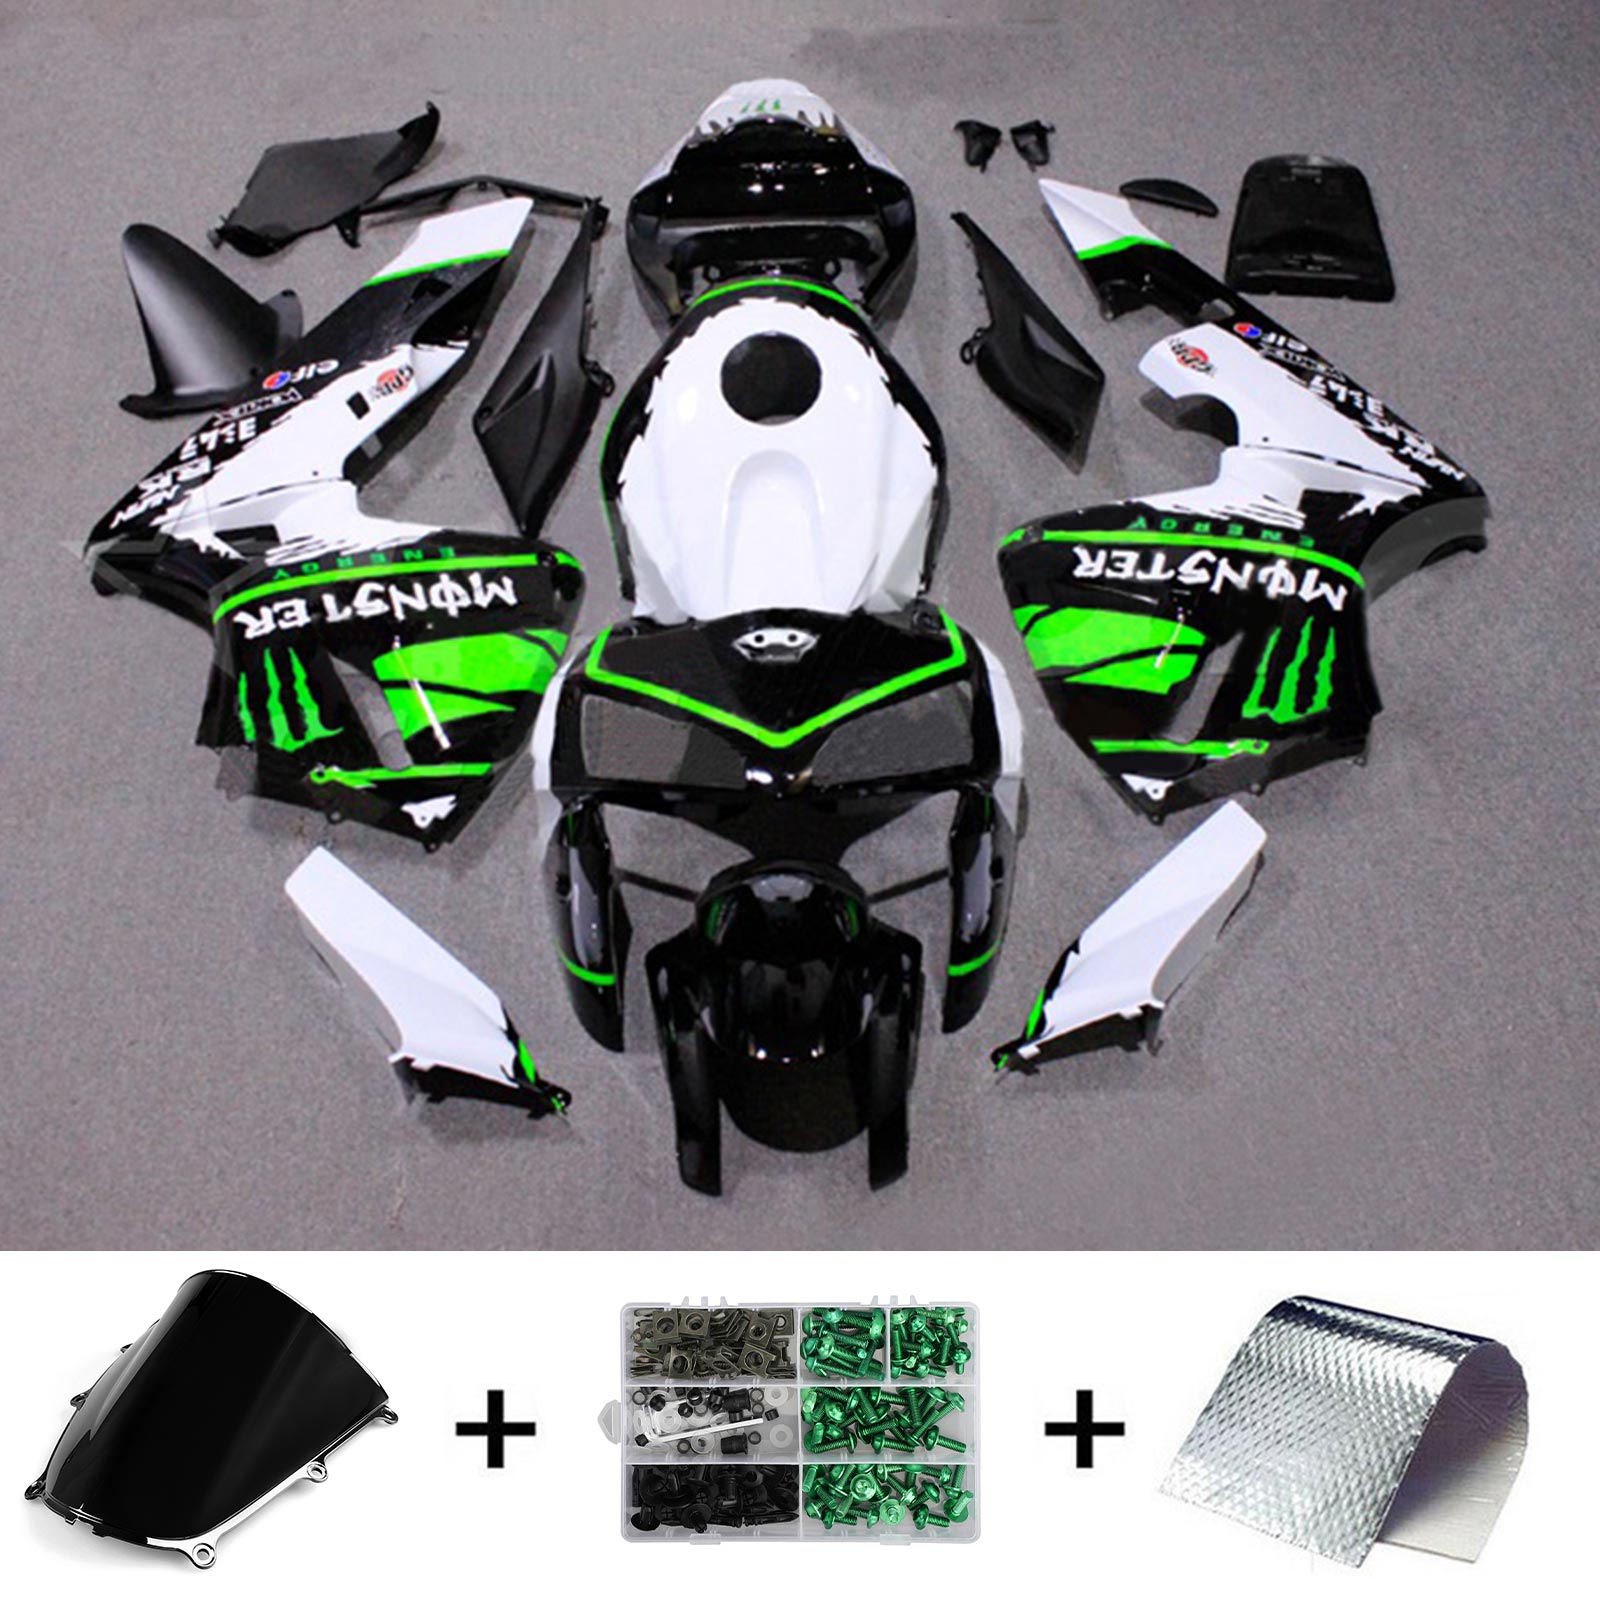 Kit carena Amotopart 2005-2006 Honda CBR600RR bianco nero verde